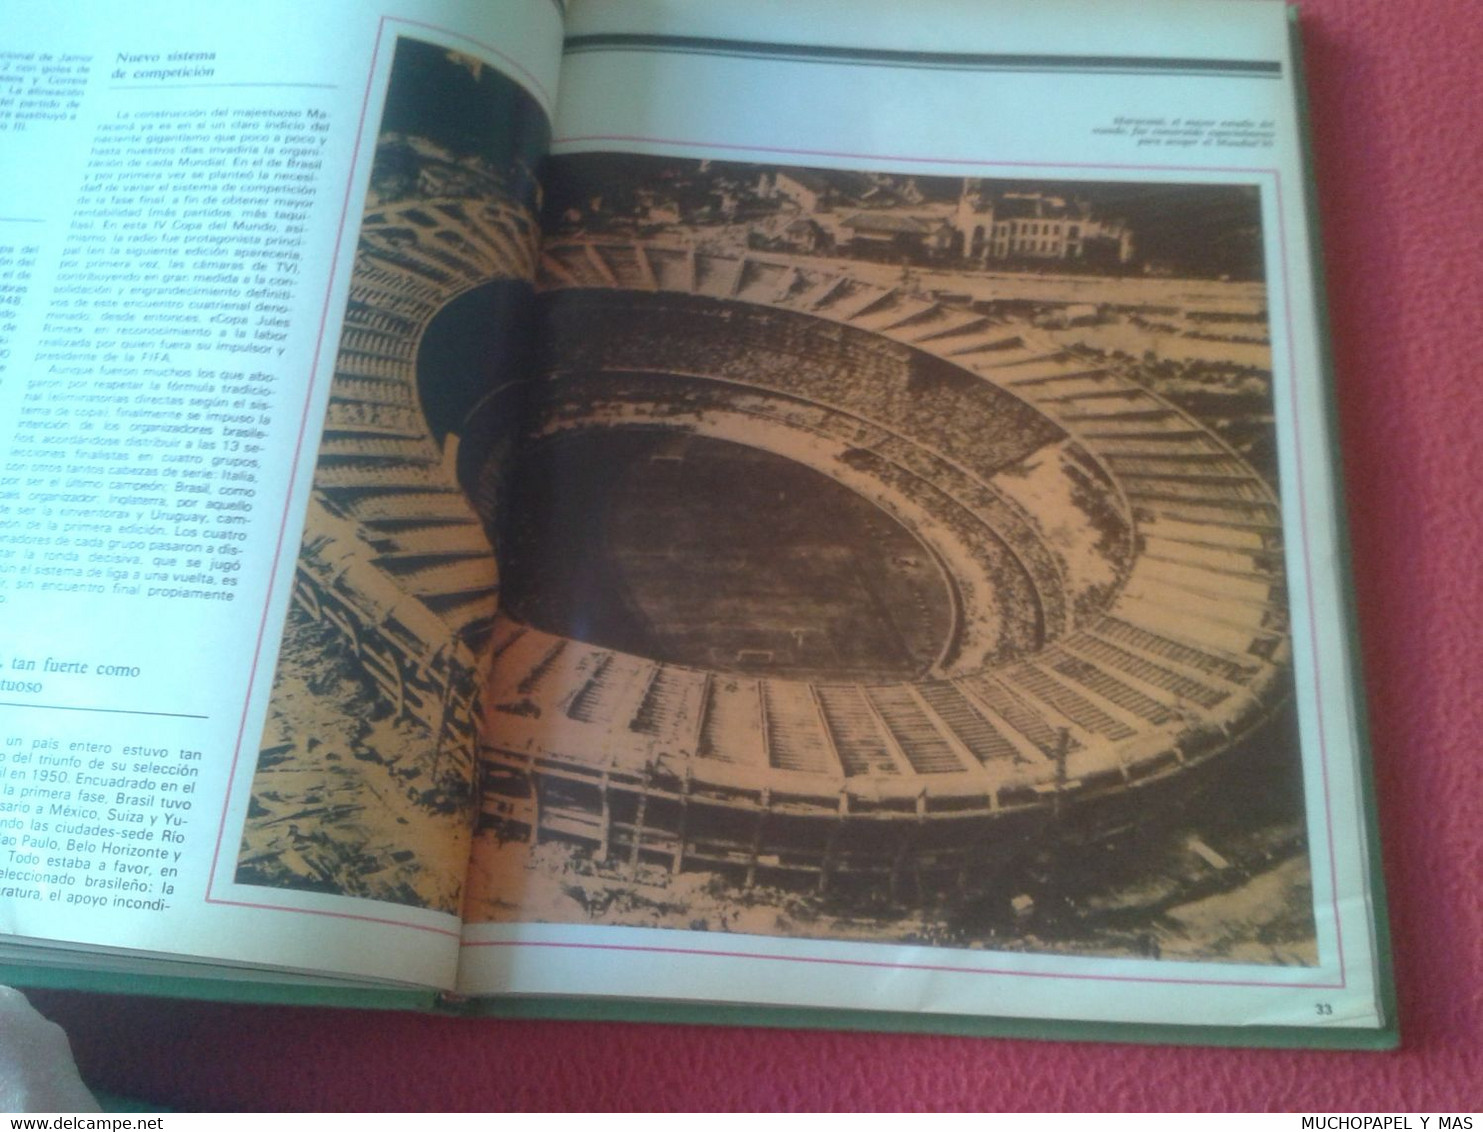 LIBRO DE FÚTBOL HISTORIA LOS MUNDIALES DE FÚTBOL 1930-1982 WORLD CUP FOOTBALL HISTORY LA VANGUARDIA. SOCCER CHAMPIONSHIP